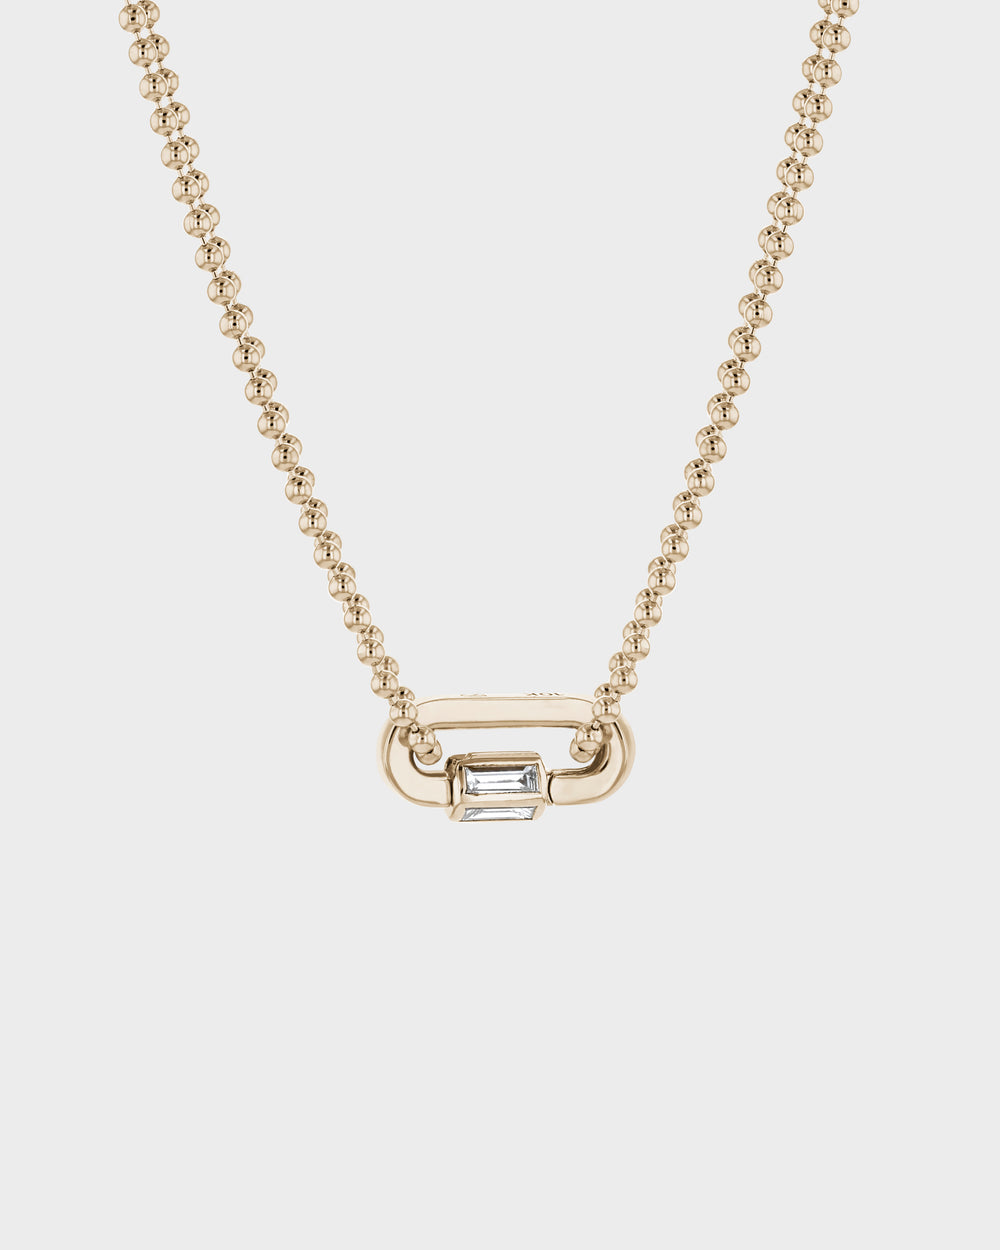 Diamond Lock Necklace by Sarah & Sebastian